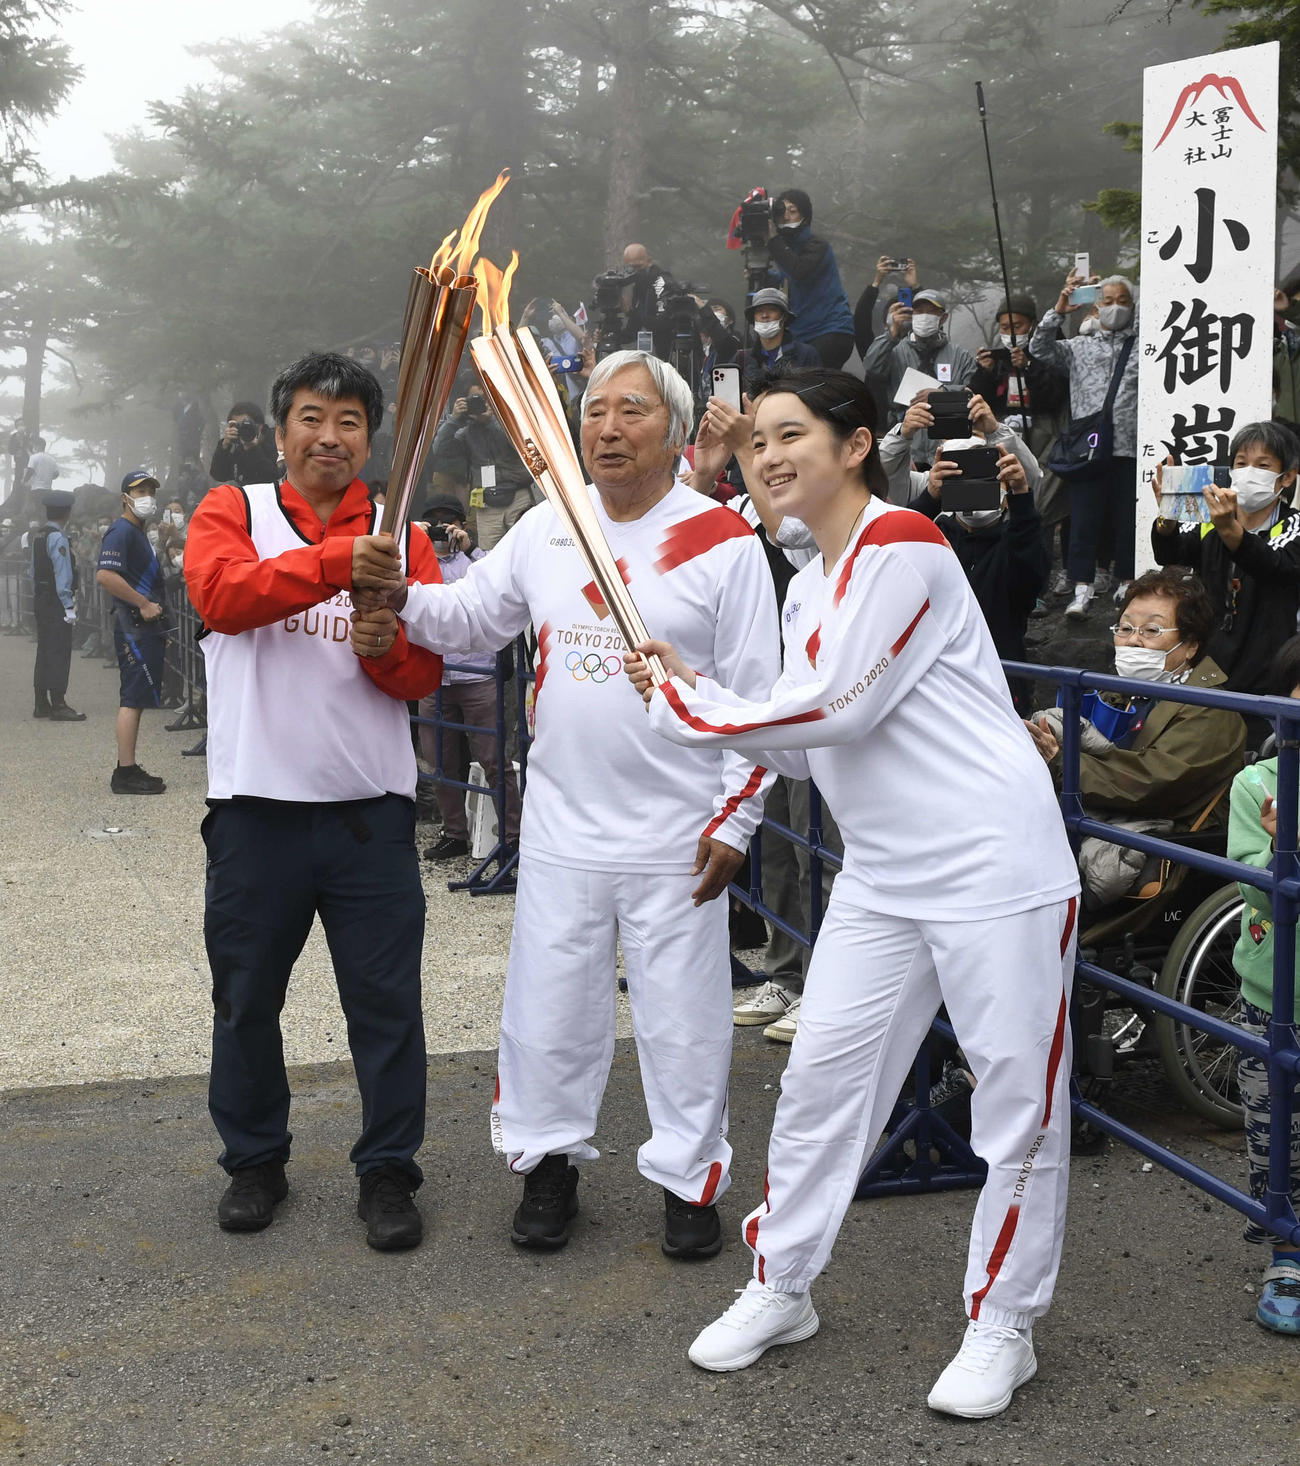 聖火ランナーを務めた冒険家の三浦雄一郎さん（中央）とサポートする息子の豪太さん（左）。手前は前走者の矢野育帆さん（代表撮影）